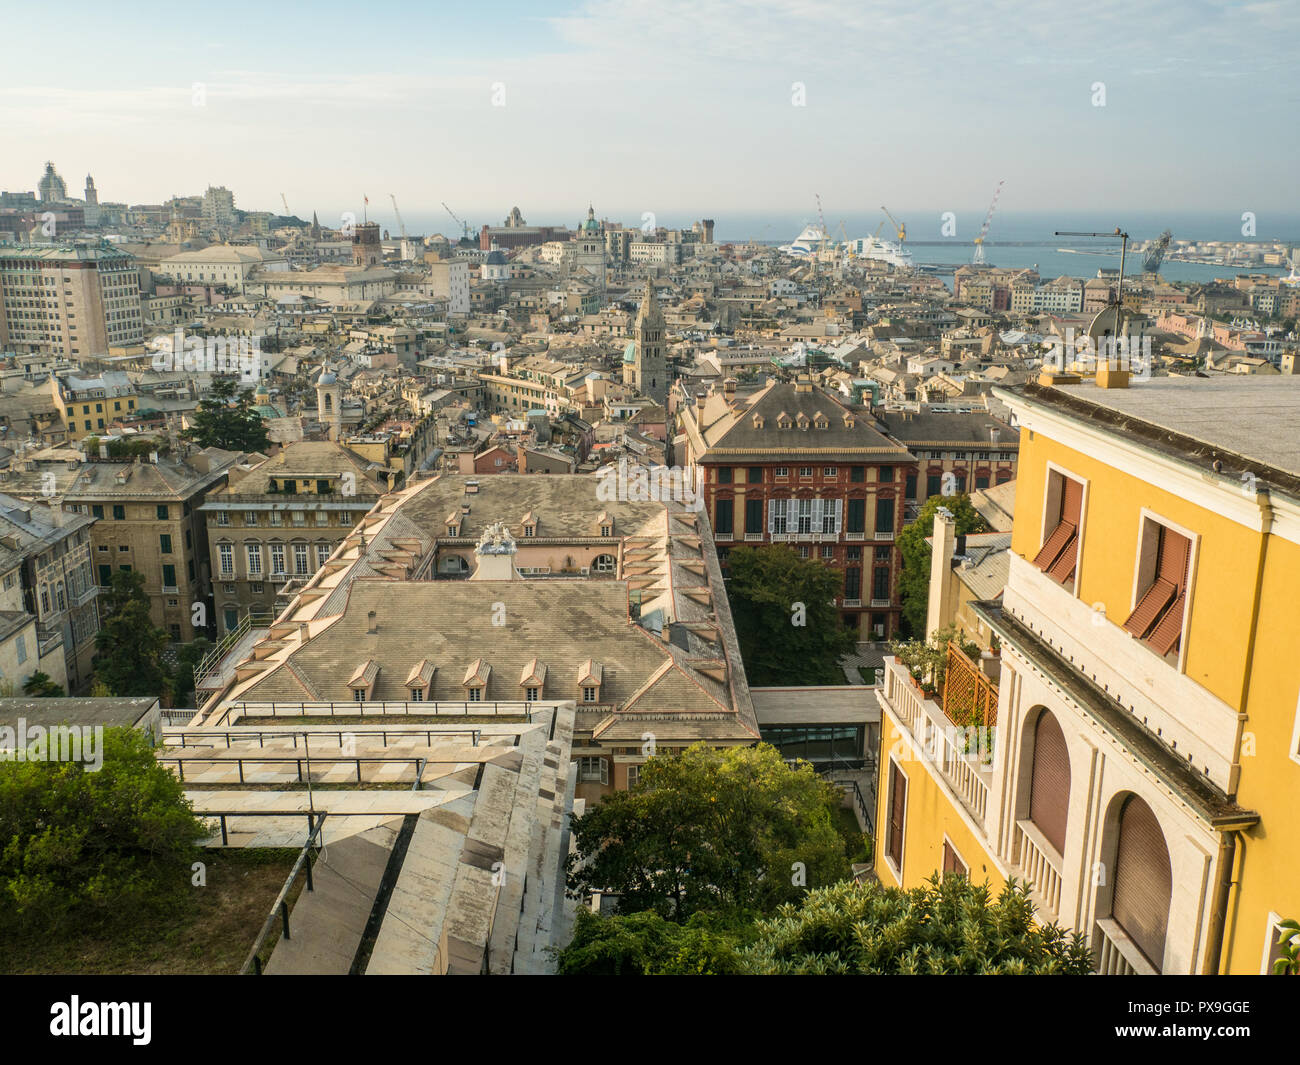 Gênes, une ville portuaire dans la région de Ligurie. Spianata Castelletto, vue de la façade du Palazzo Rosso rouge peut être vu au centre à droite. Banque D'Images